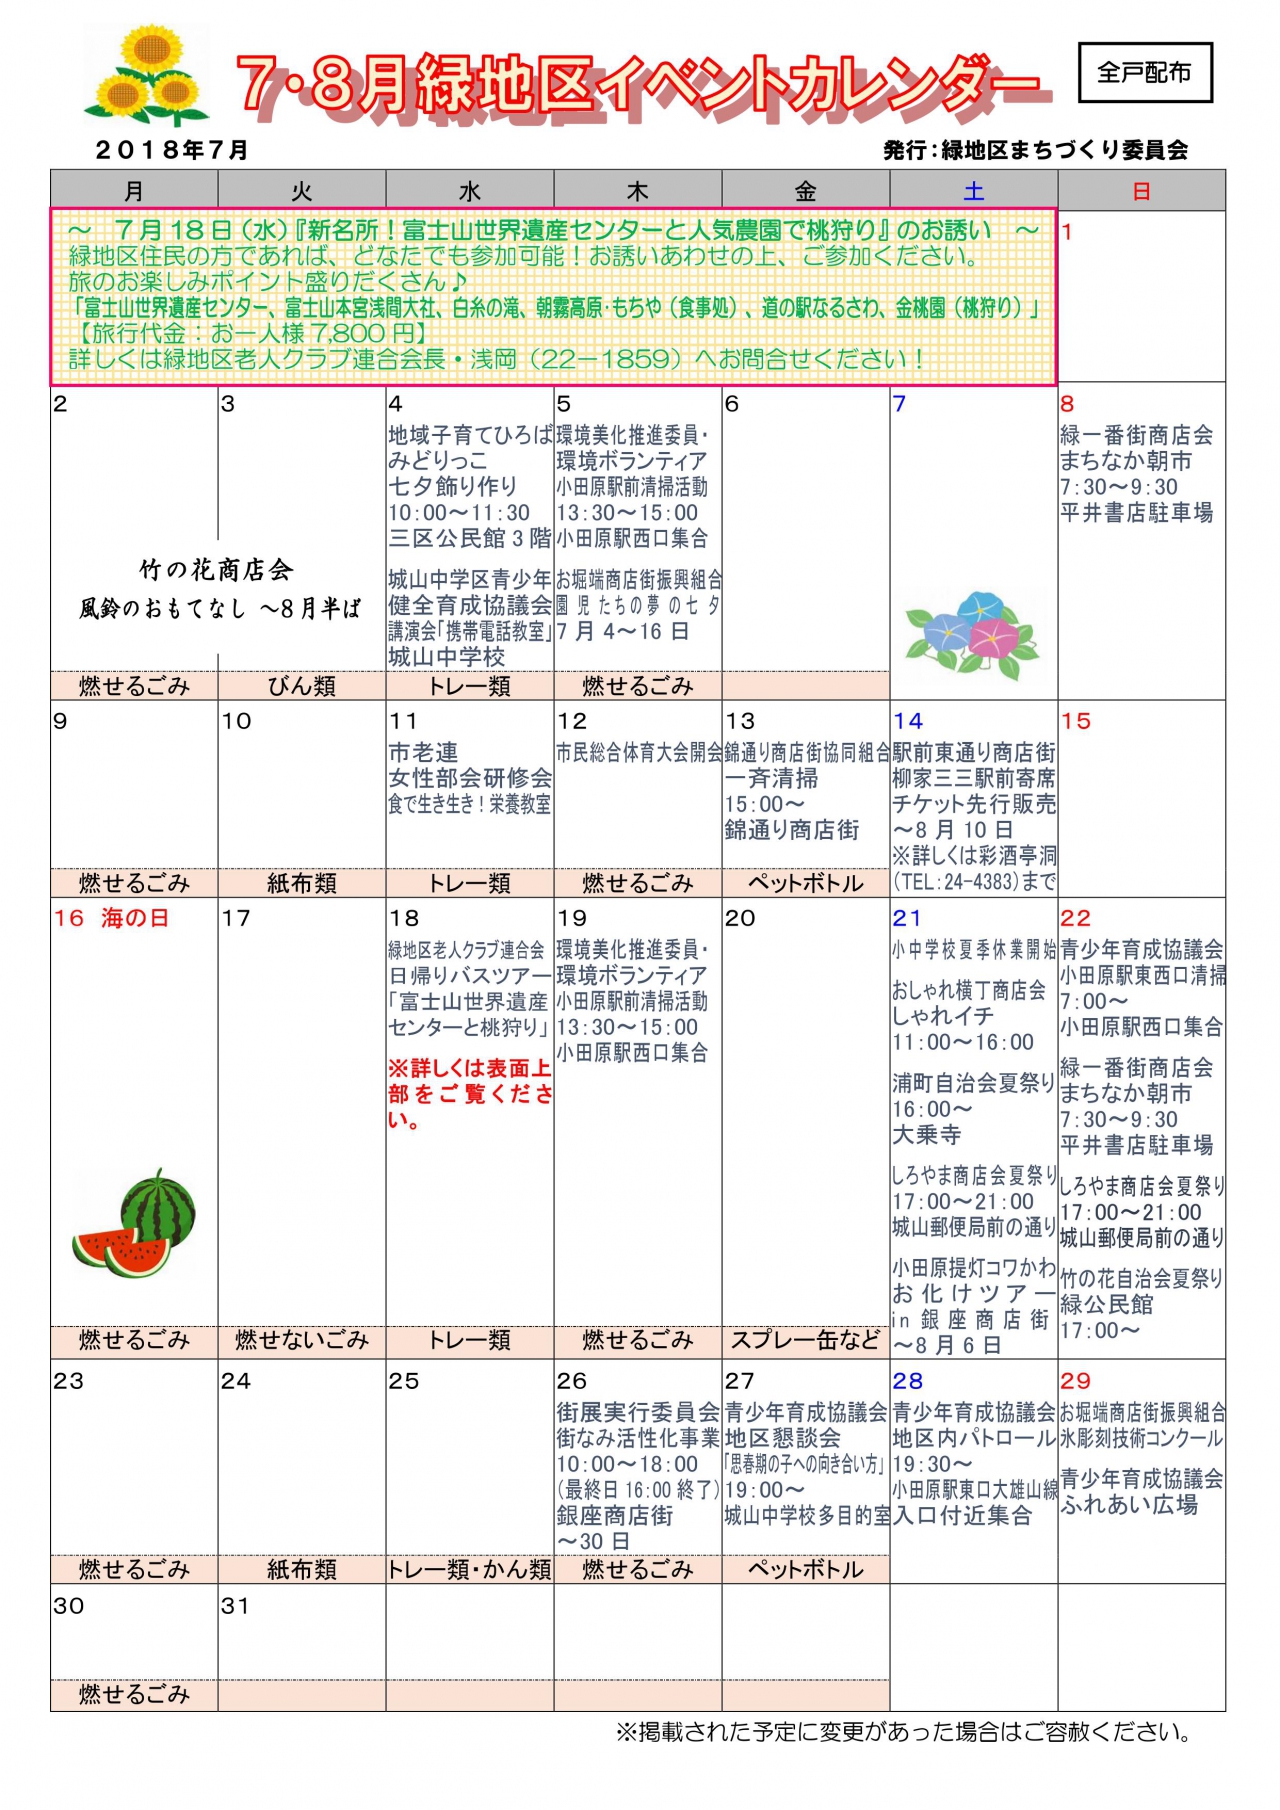 緑地区イベントカレンダー 9月10月発行 各自治会からのお知らせ 小田原自治会総連合